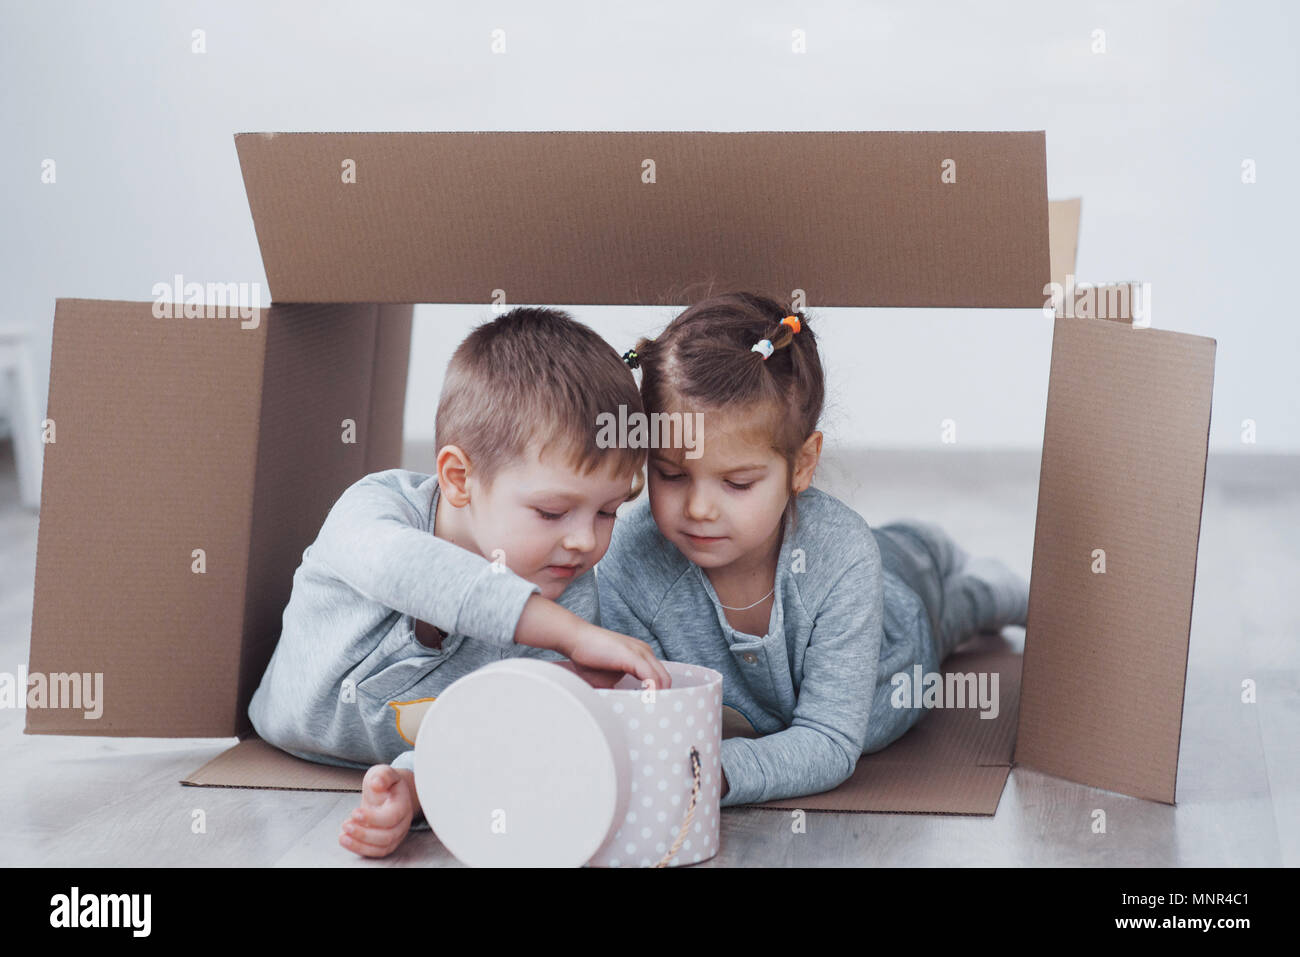 Zwei kleine Kinder, Junge und Mädchen spielen in Kartons. Konzept Foto. Kinder haben Spaß Stockfoto